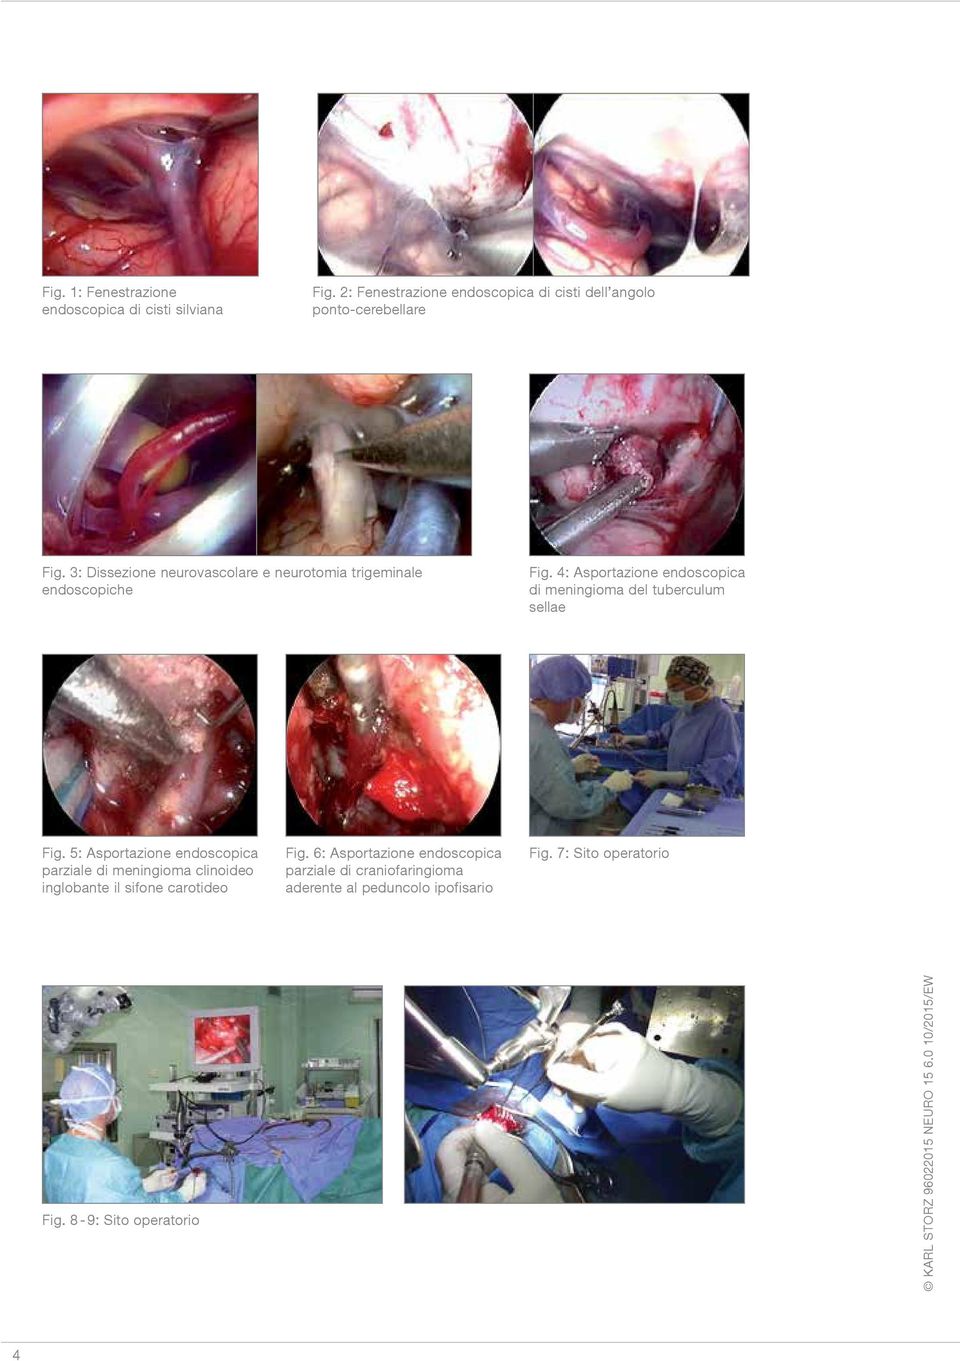 3: Dissezione neurovascolare e neurotomia trigeminale endoscopiche Fig.